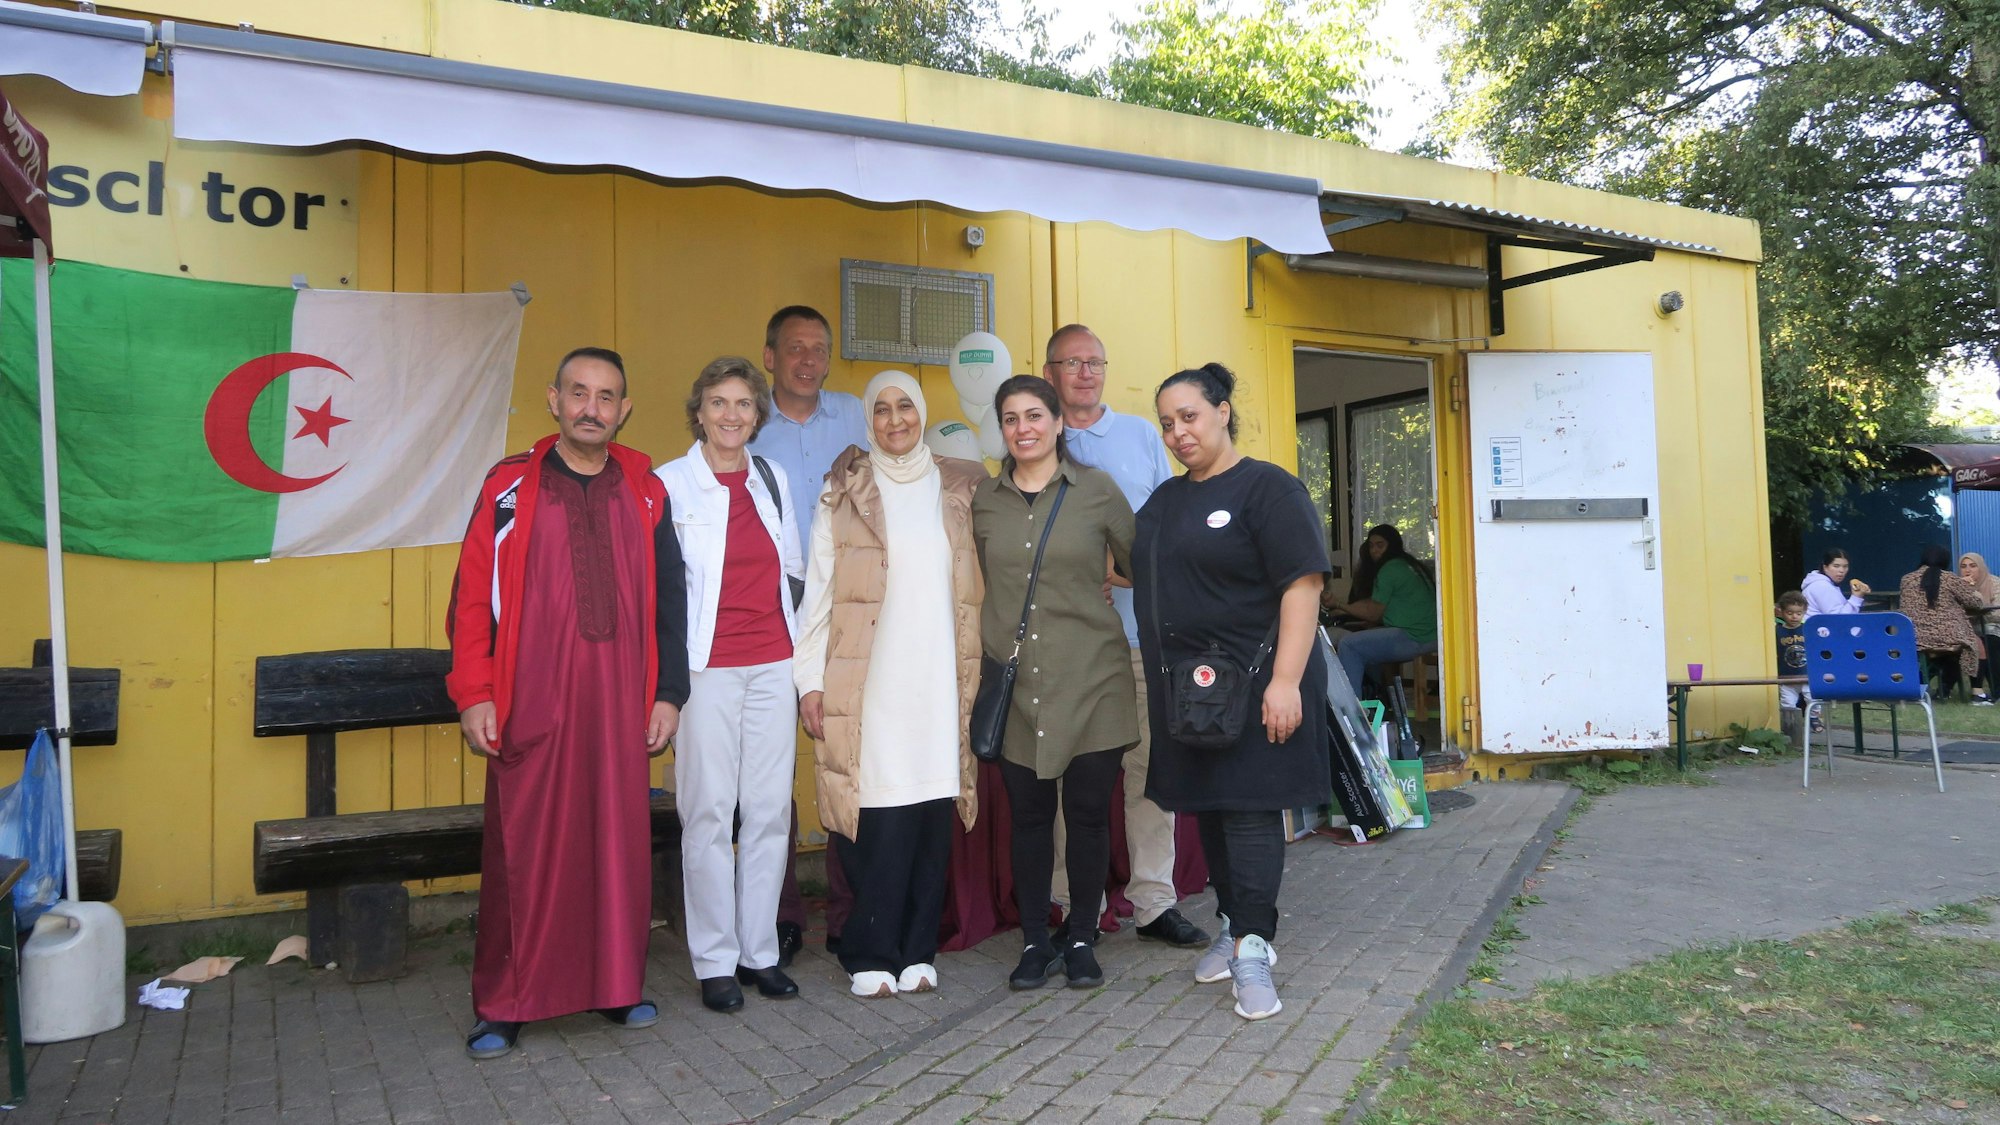 Rolf Blandow und Thomas Bischofs mit Claudia Greven-Thümer sowie Ali Elmakhfi, Naziha Almakhti, Leila Sulayiman und Hanan Almahi stehen vor einem gelben Container.